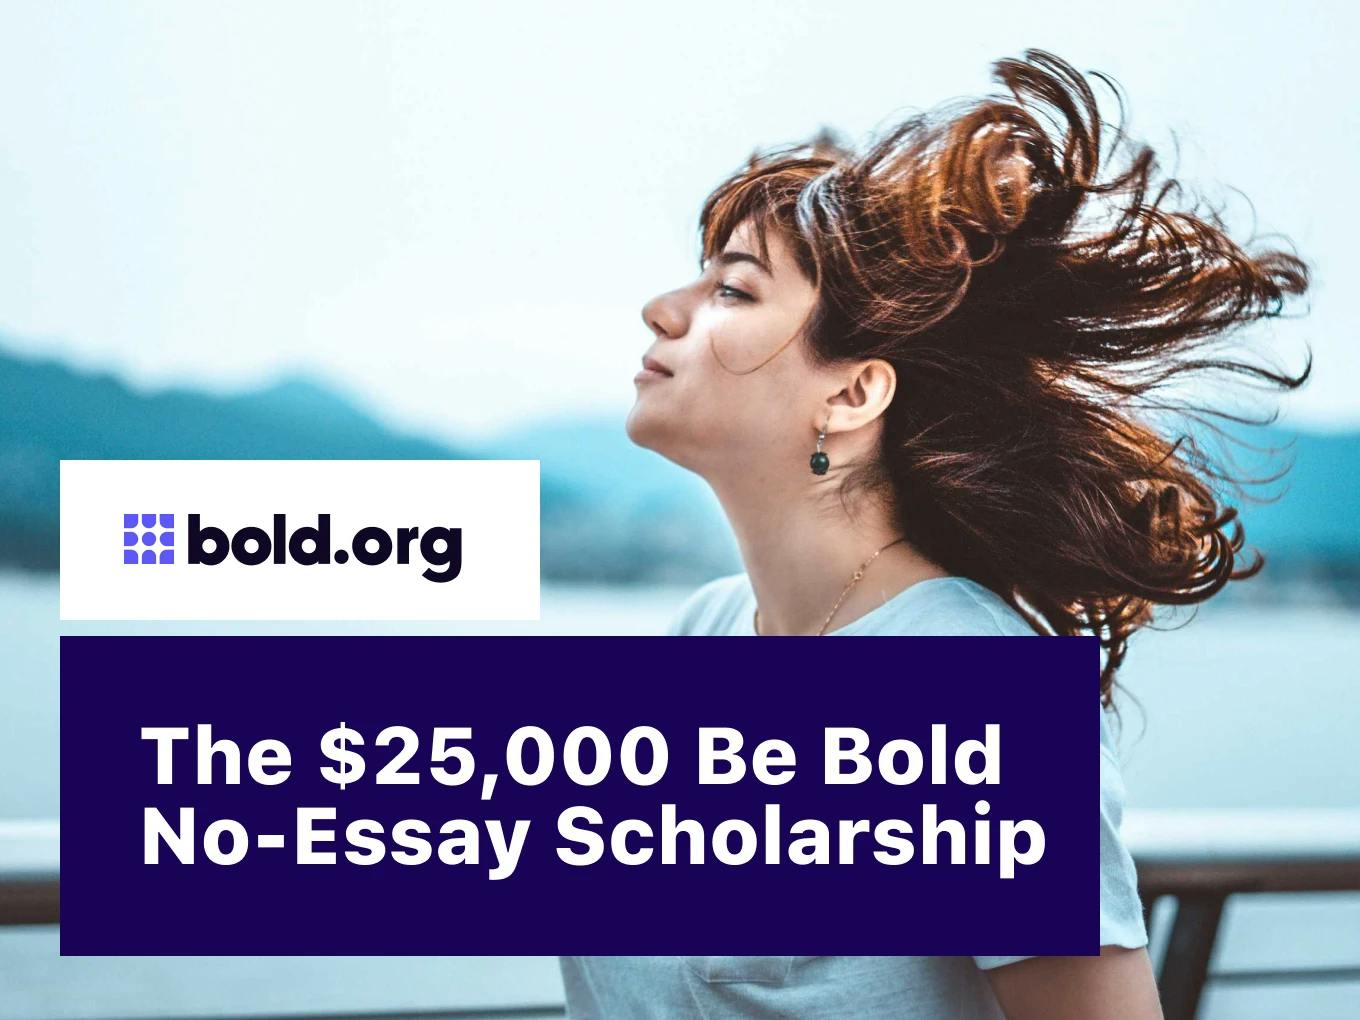 "Be Bold" No-Essay Scholarship